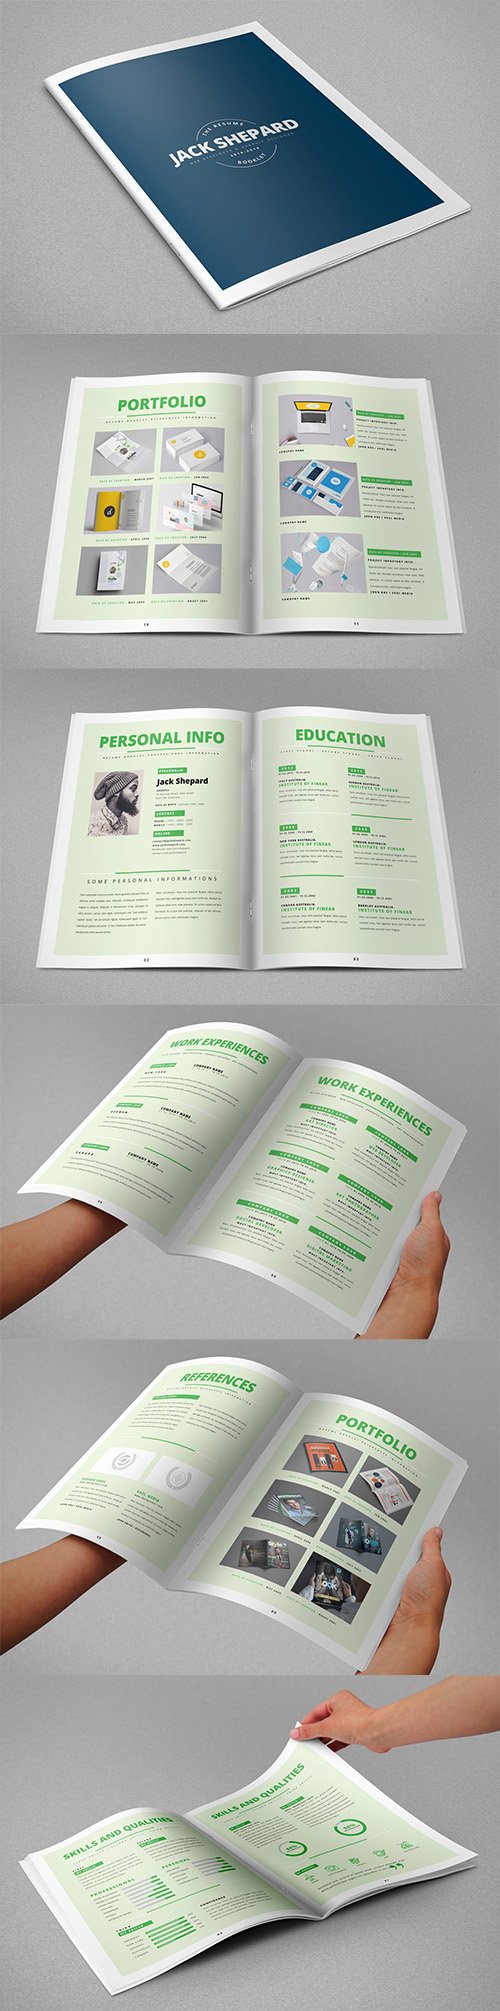 Resume Booklet INDD